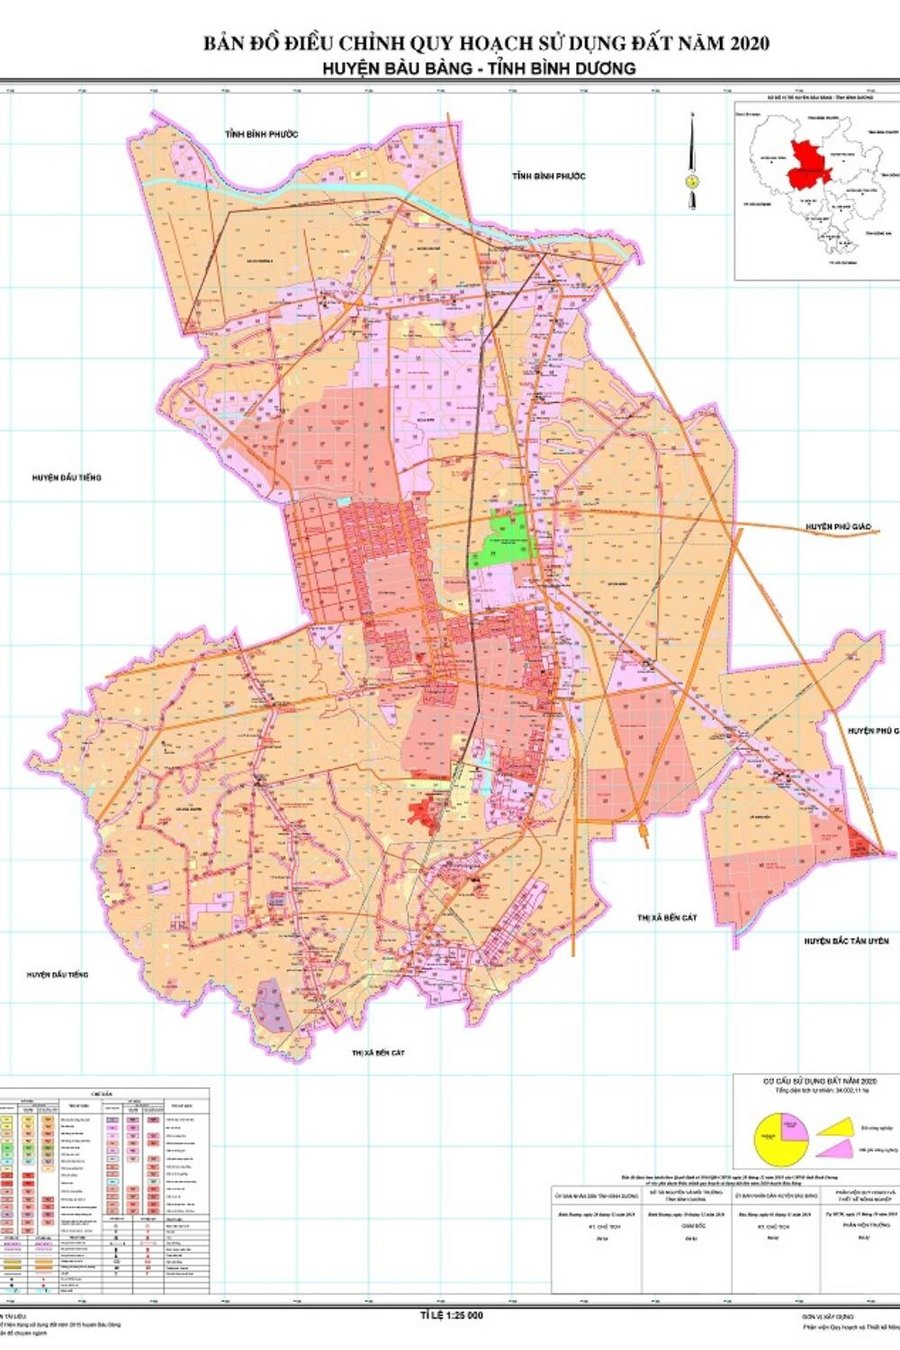 Bản đồ huyện Bàu Bàng cập nhật mới nhất: Bản đồ huyện Bàu Bàng được cập nhật liên tục để phục vụ cho quy hoạch và phát triển kinh tế. Với bản đồ mới nhất, cộng đồng có thể dễ dàng nắm bắt thông tin về địa lý và các dự án điều chỉnh đất đai của huyện Bàu Bàng.